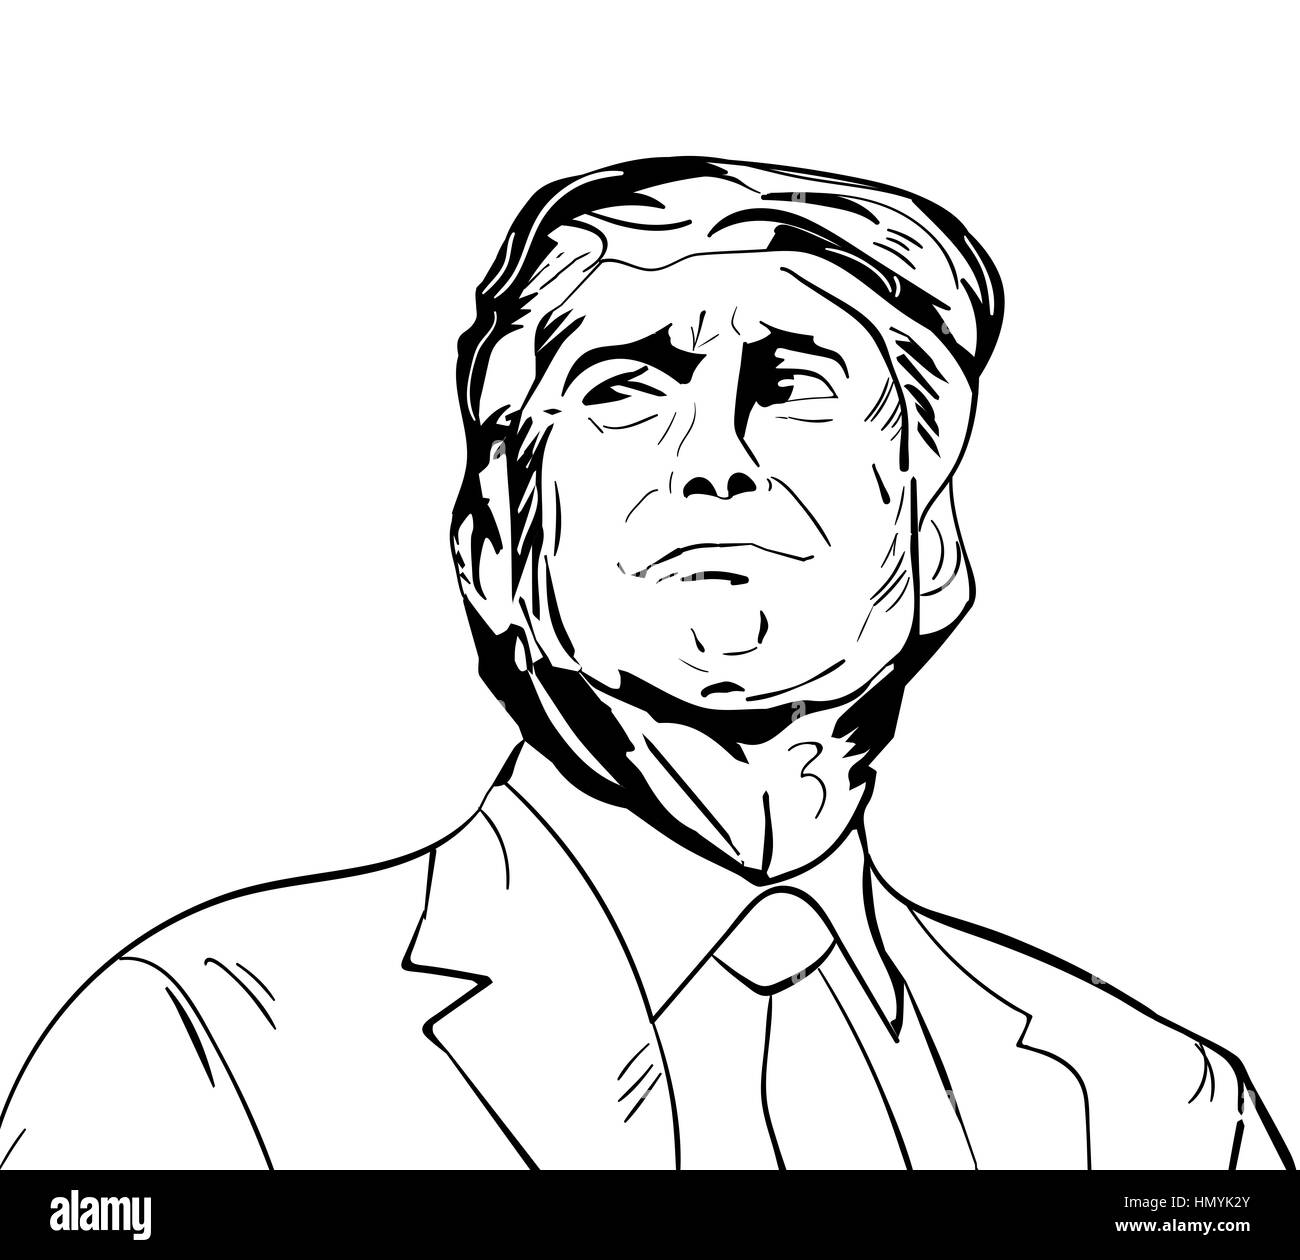 25 gennaio 2017: illustrazione del presidente americano Donald Trump realizzato a mano in stile draw Foto Stock